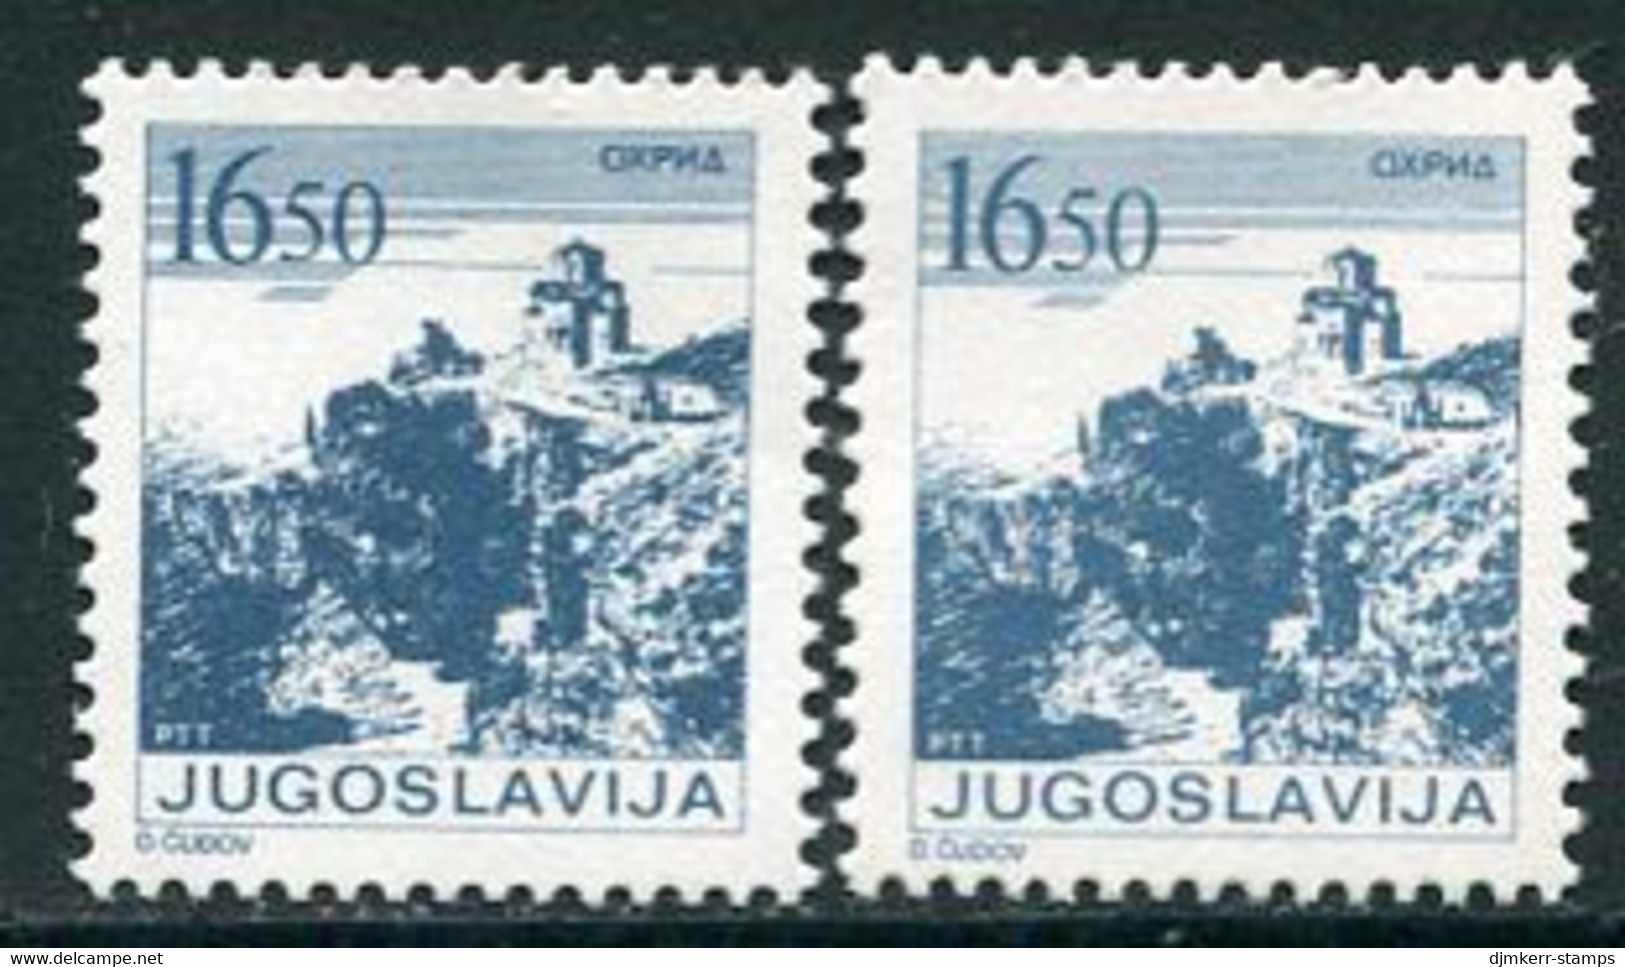 YUGOSLAVIA 1983 Towns Definitive 16.50 D. Both Perforations MNH / **.  Michel 1995A,C - Ongebruikt